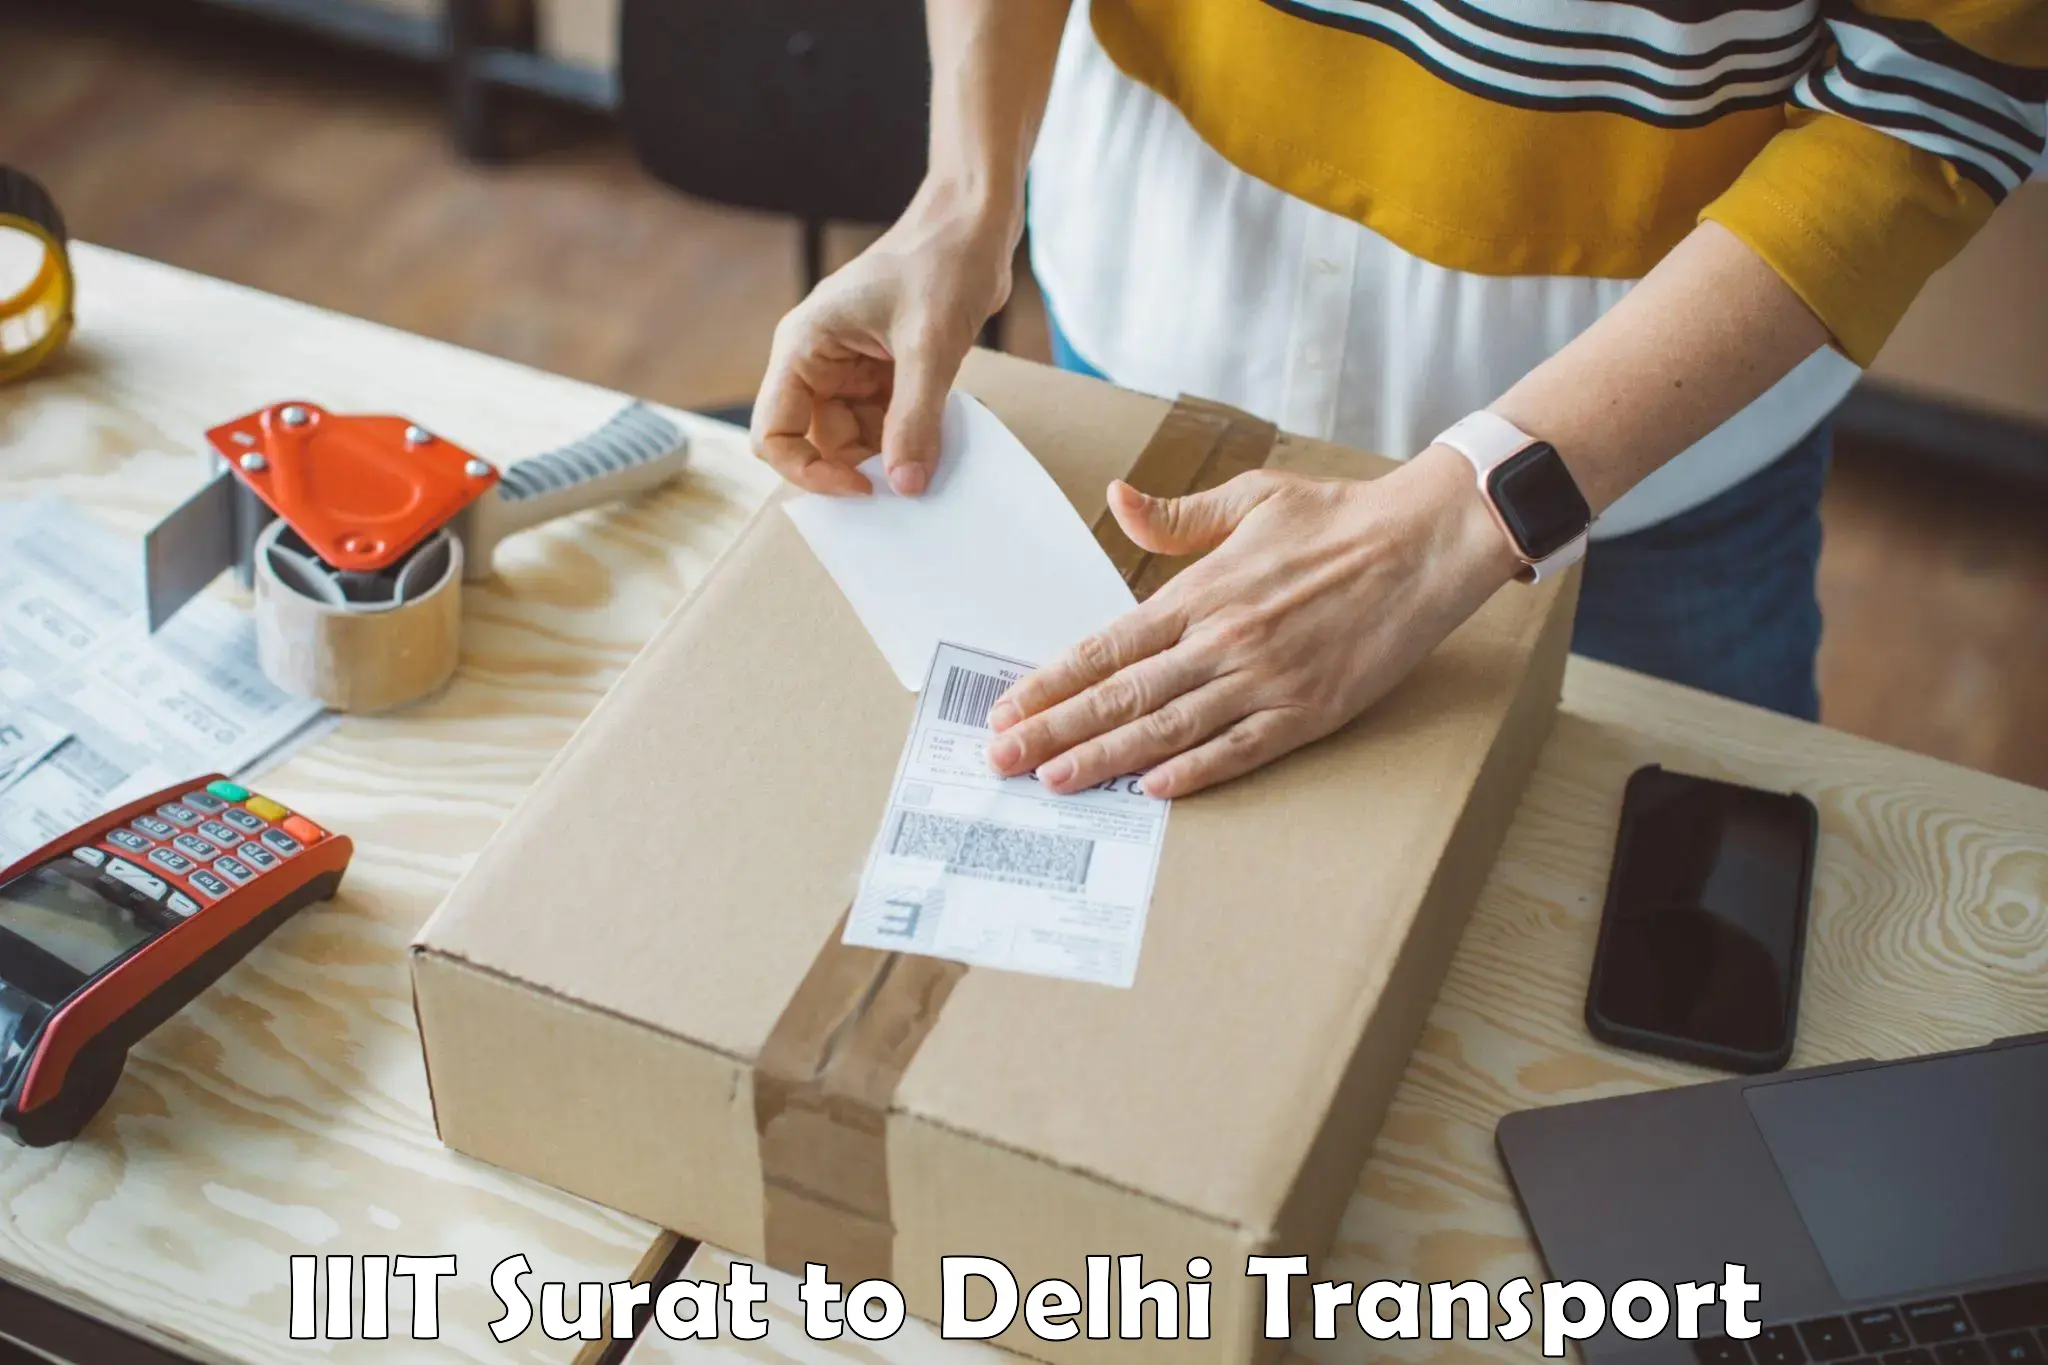 Goods transport services IIIT Surat to East Delhi